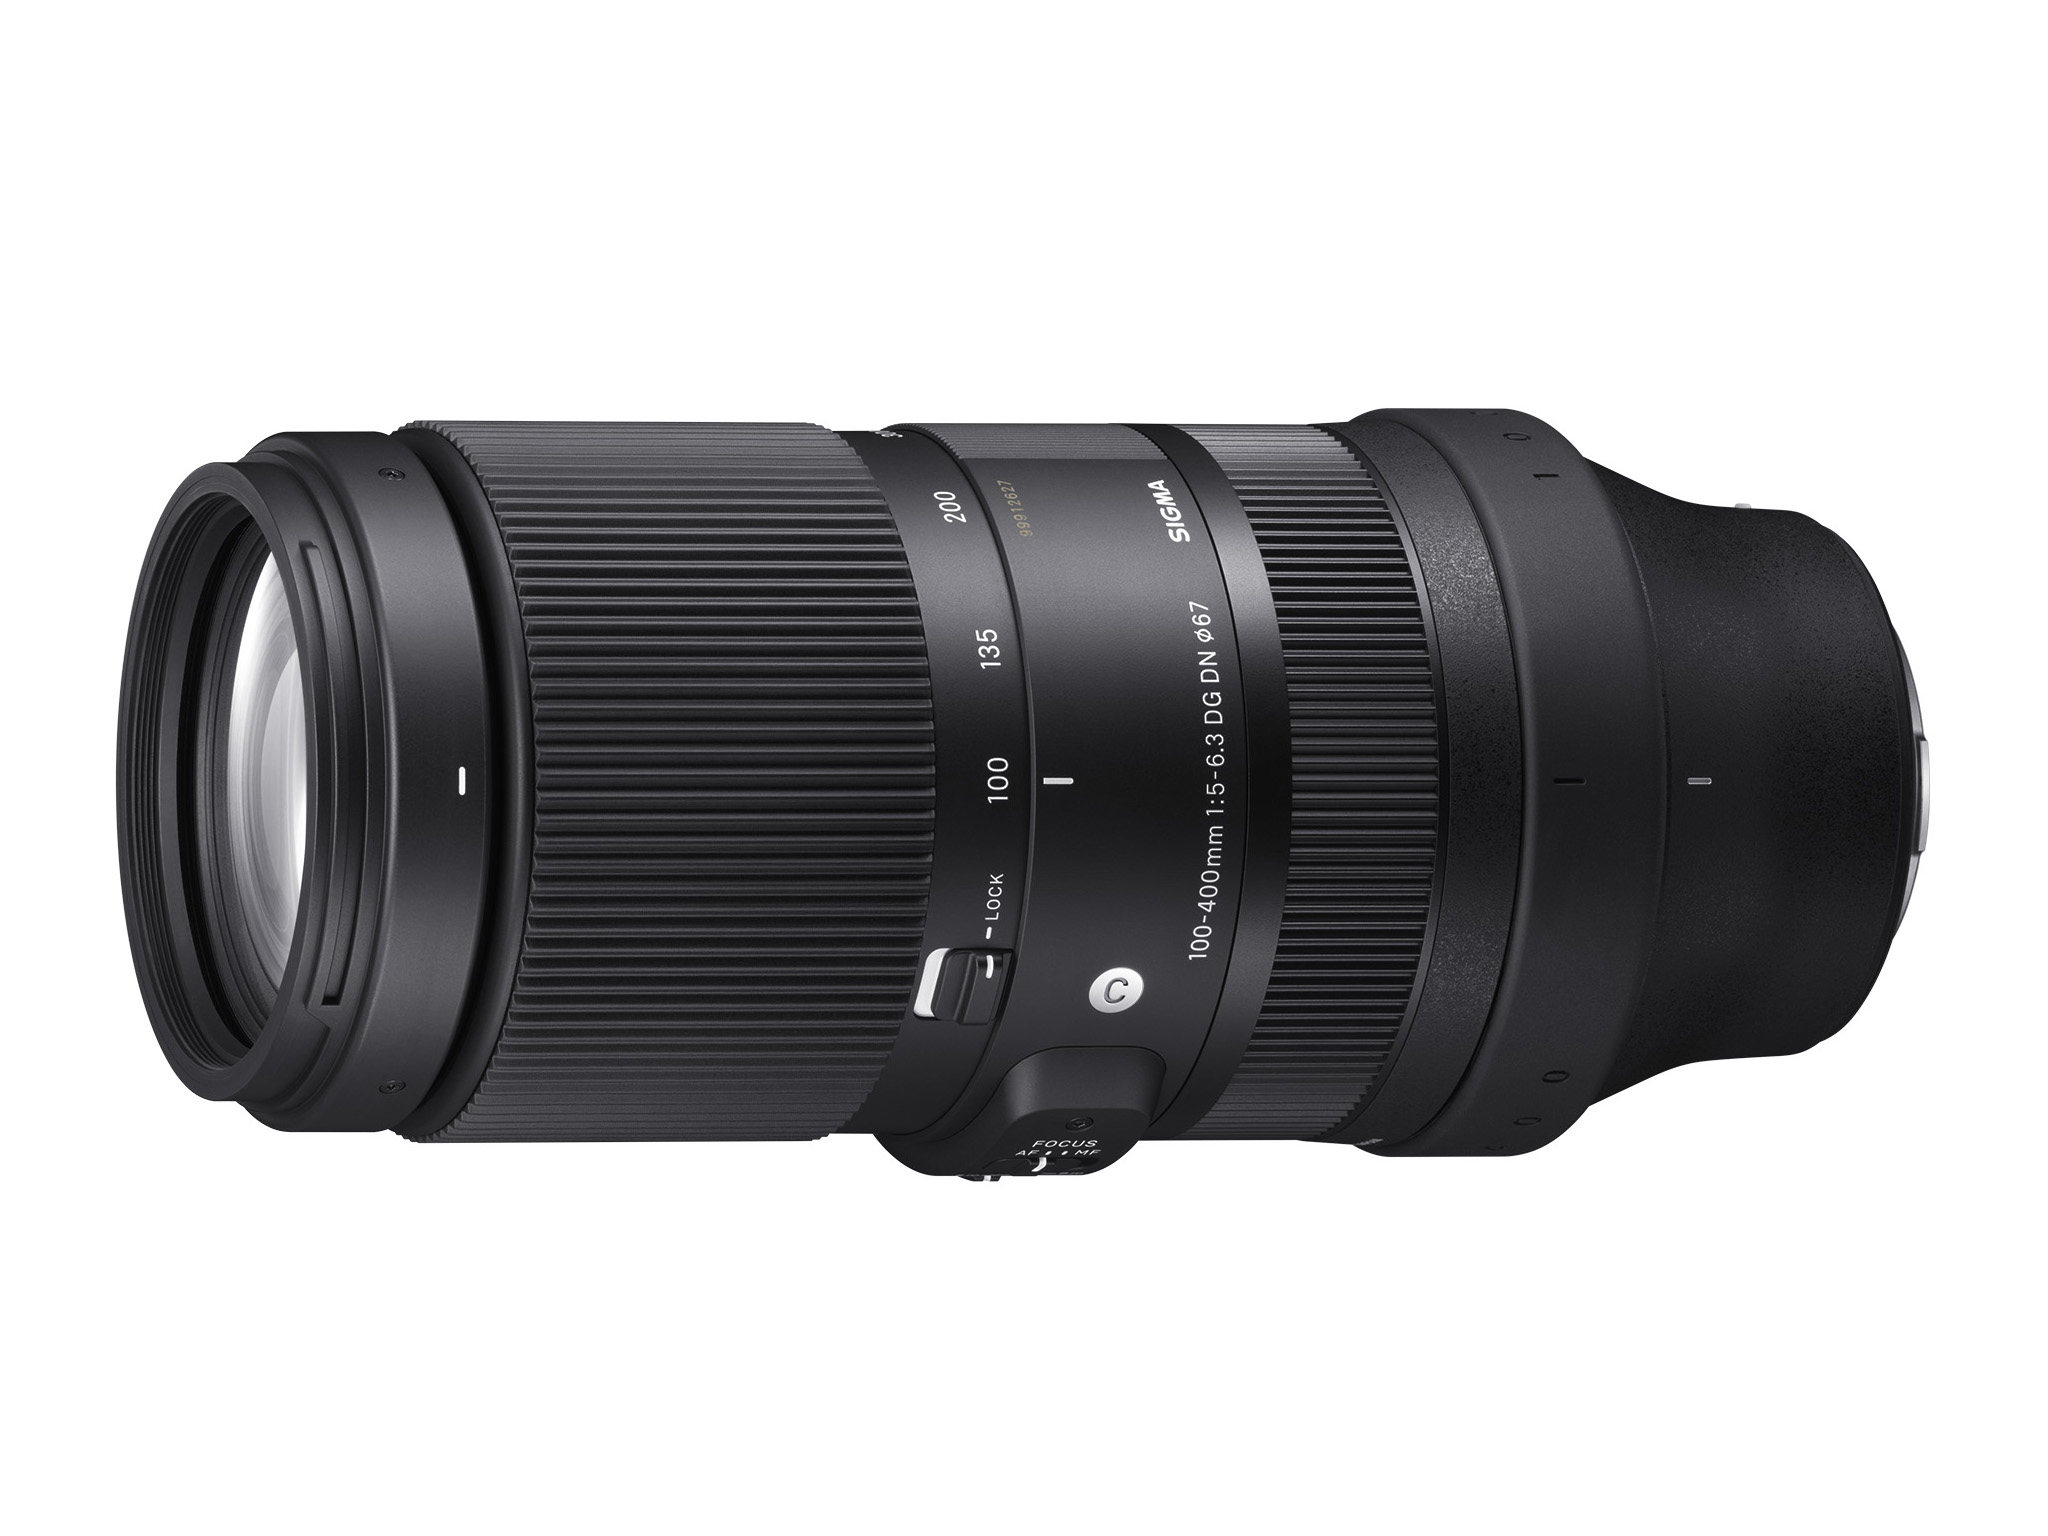 Ống kính Sigma 100-400mm cho Sony ngàm E mới chính thức ra mắt